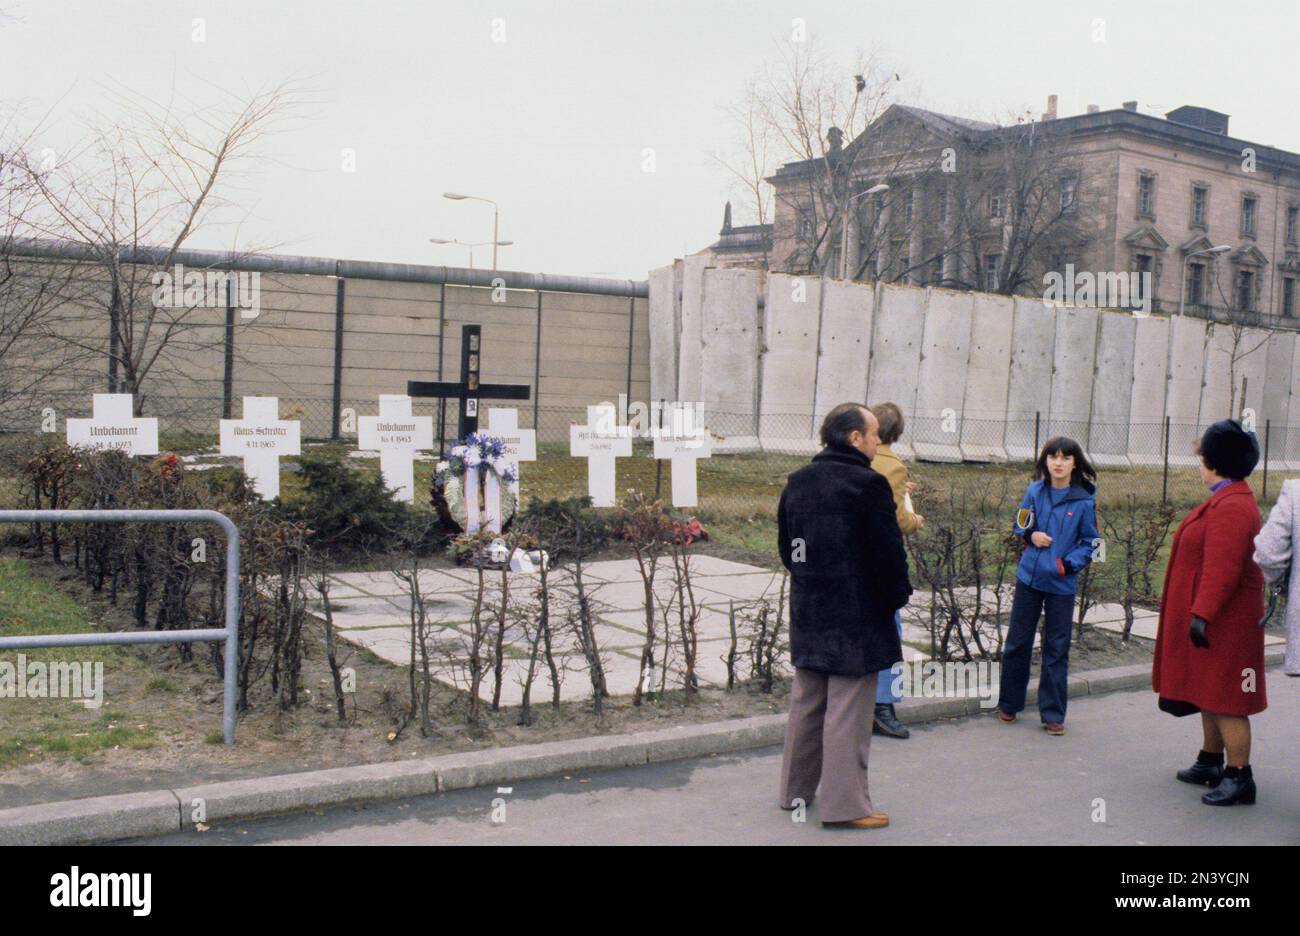 Die Berliner Mauer. Eine bewachte Betonbarriere, die Westberlin von 1961 bis 1989 umkreiste und es von Ostberlin und Ostdeutschland trennte. Der Bau der Berliner Mauer begann 1961. Westberlin war eine politische Enklave, die den westlichen Teil Berlins während der Jahre des Kalten Krieges umfasste. Foto 1978 der Berliner Mauer und ihrer Betonbauteile. Stockfoto